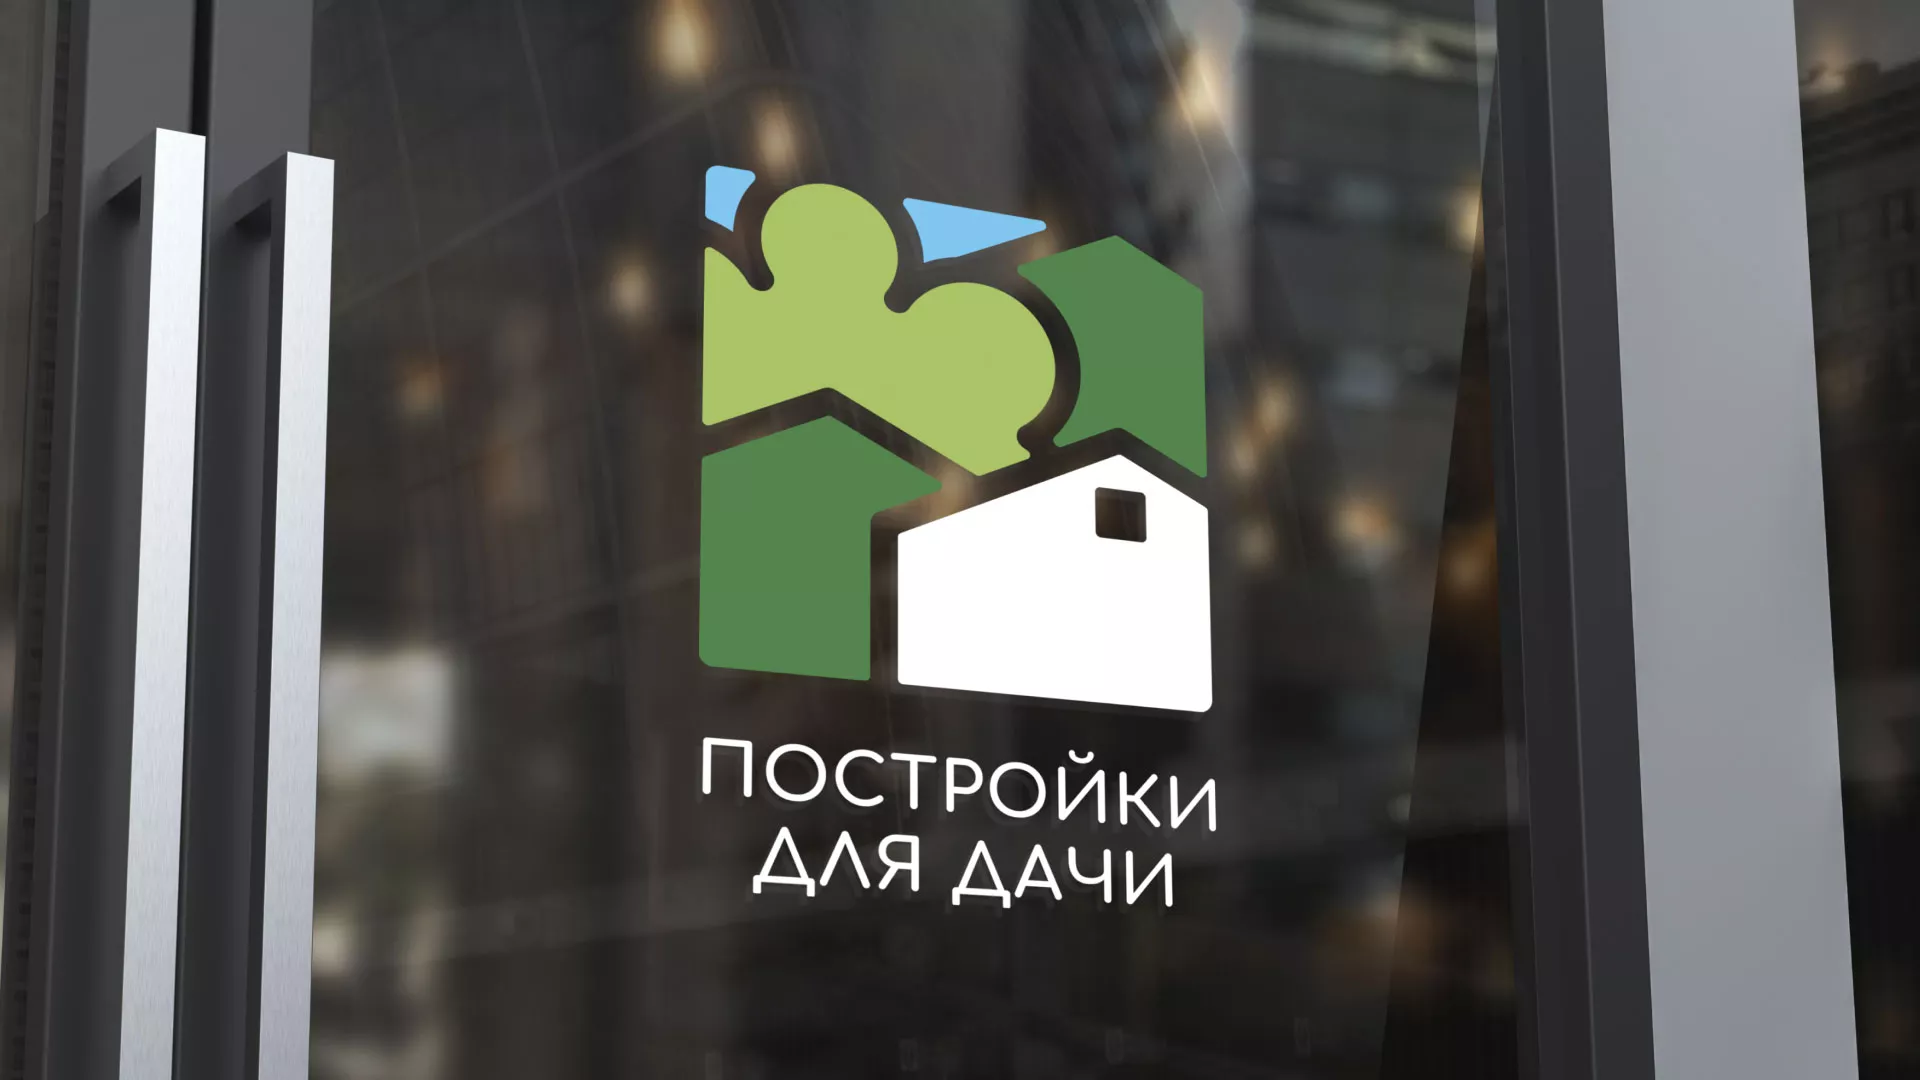 Разработка логотипа в Гае для компании «Постройки для дачи»